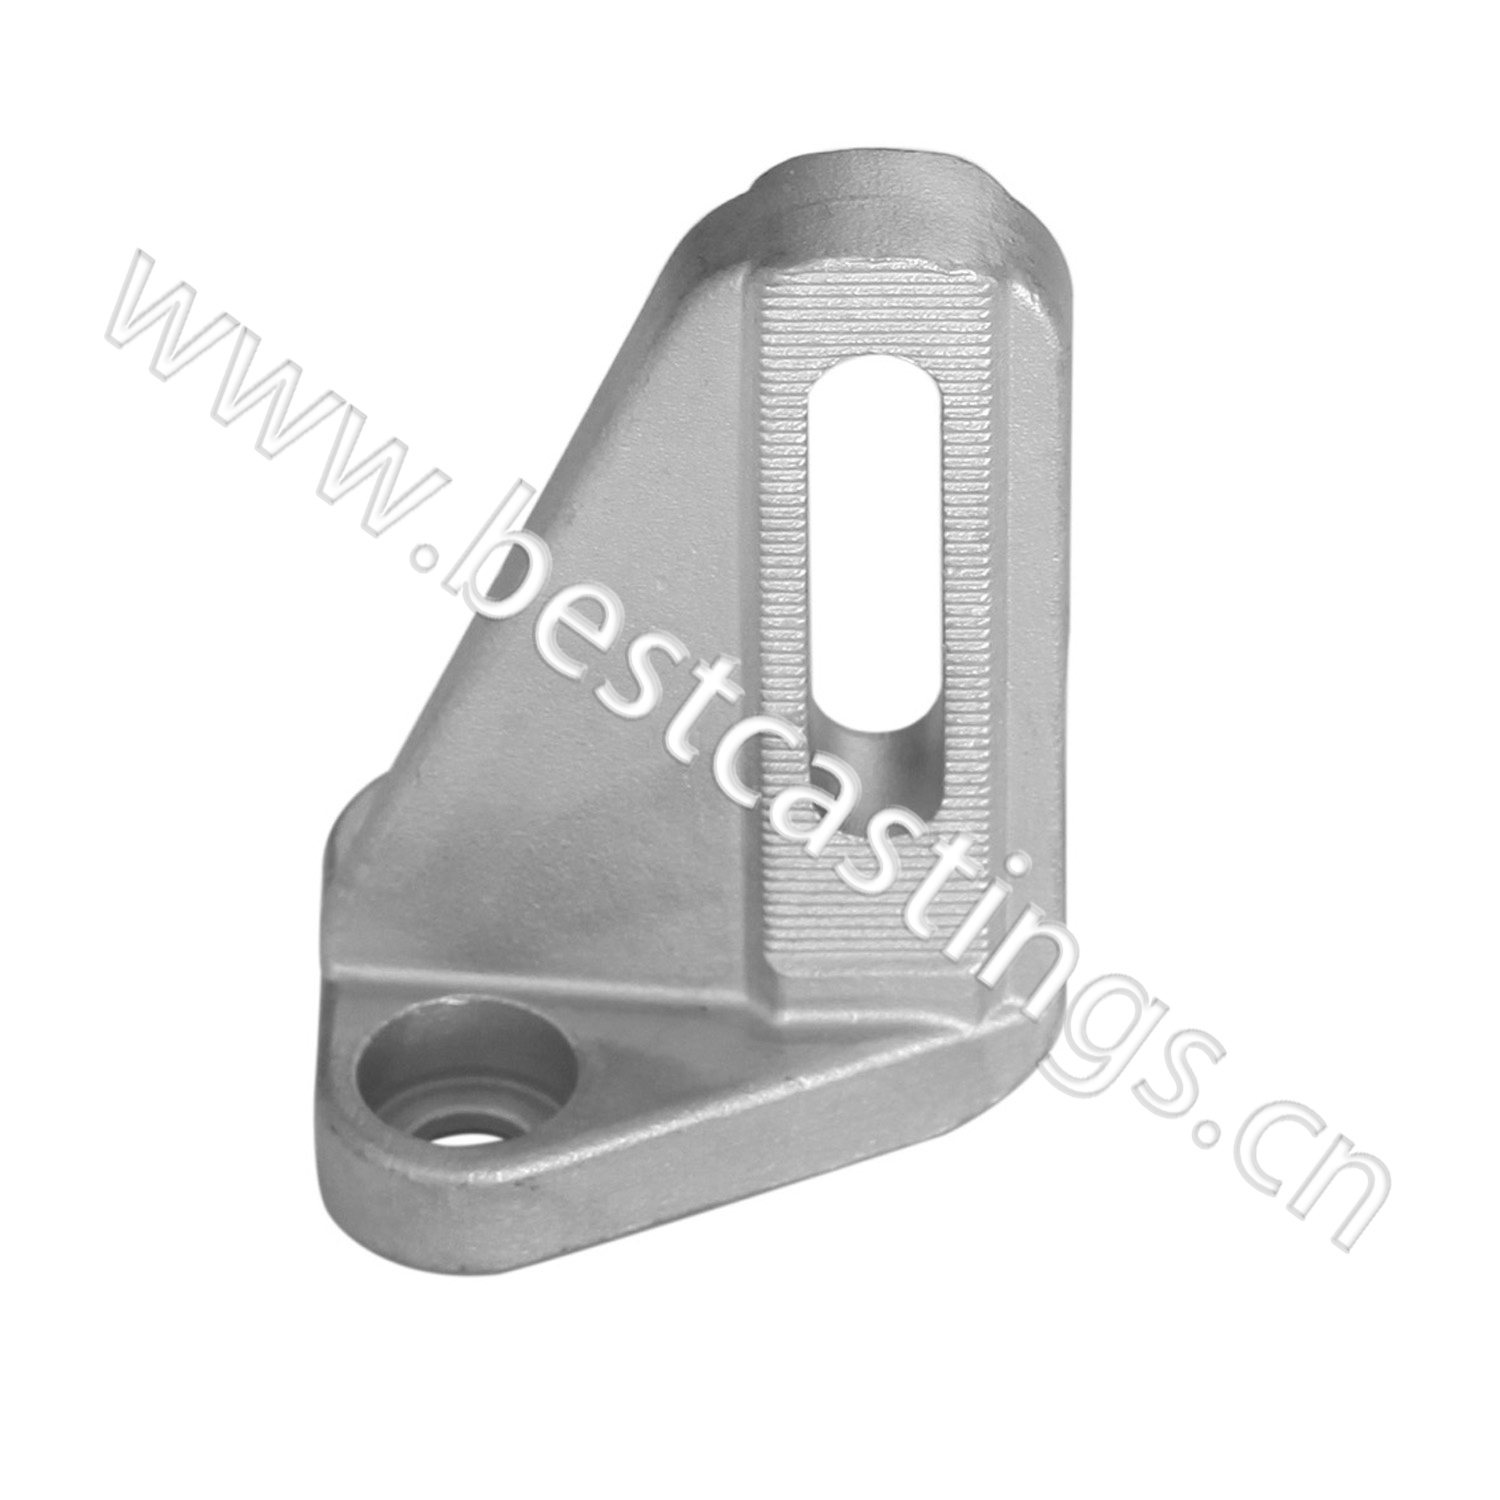 Precision cast iron platen